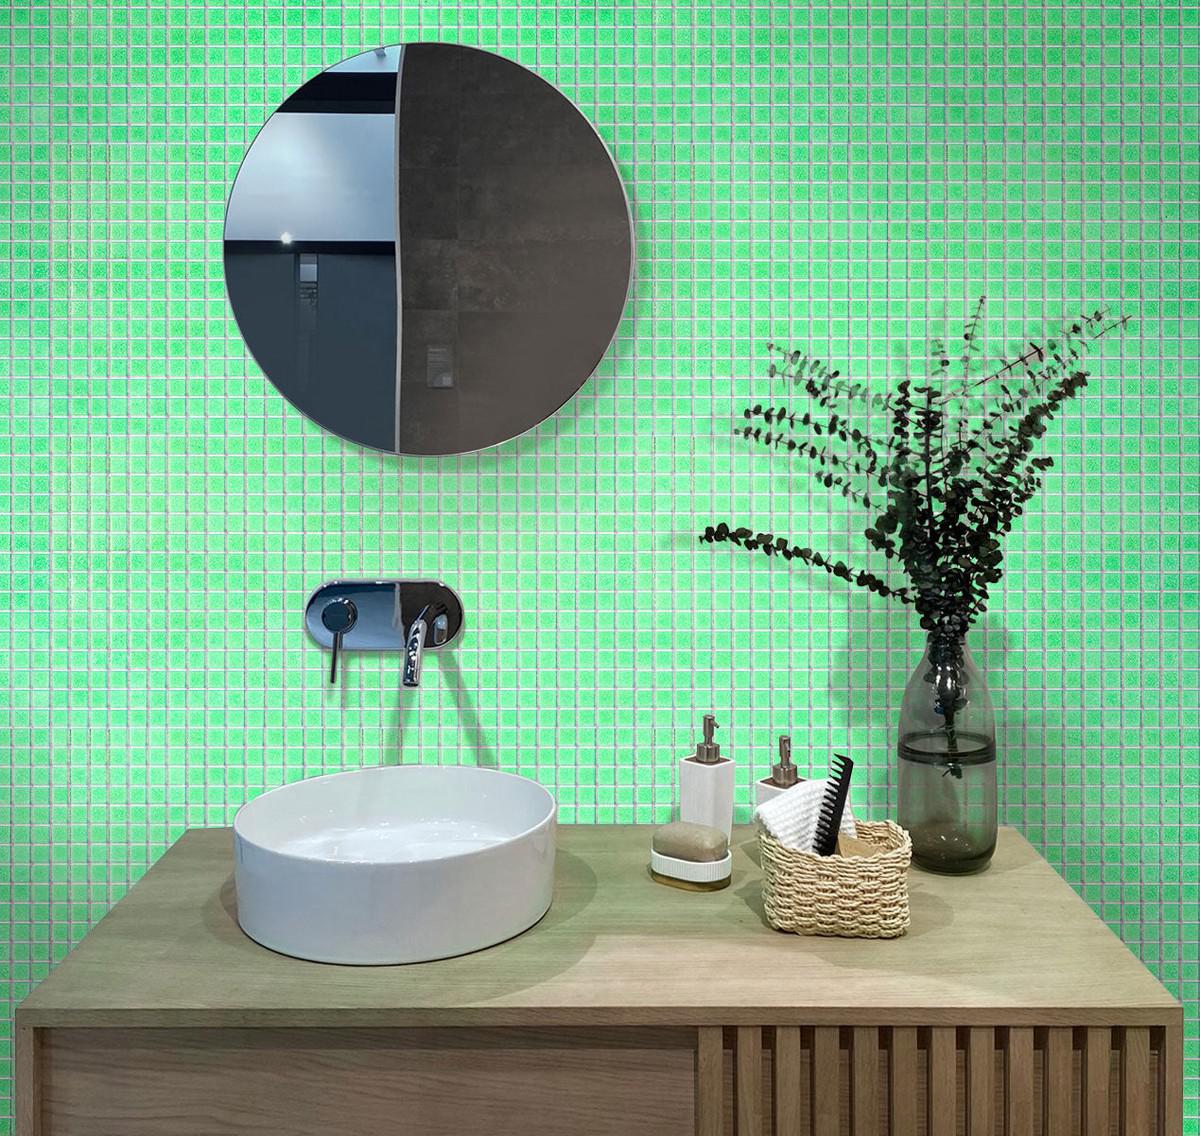 Speckled Lime Green Squares Glass Pool Tile Bathroom Backsplash